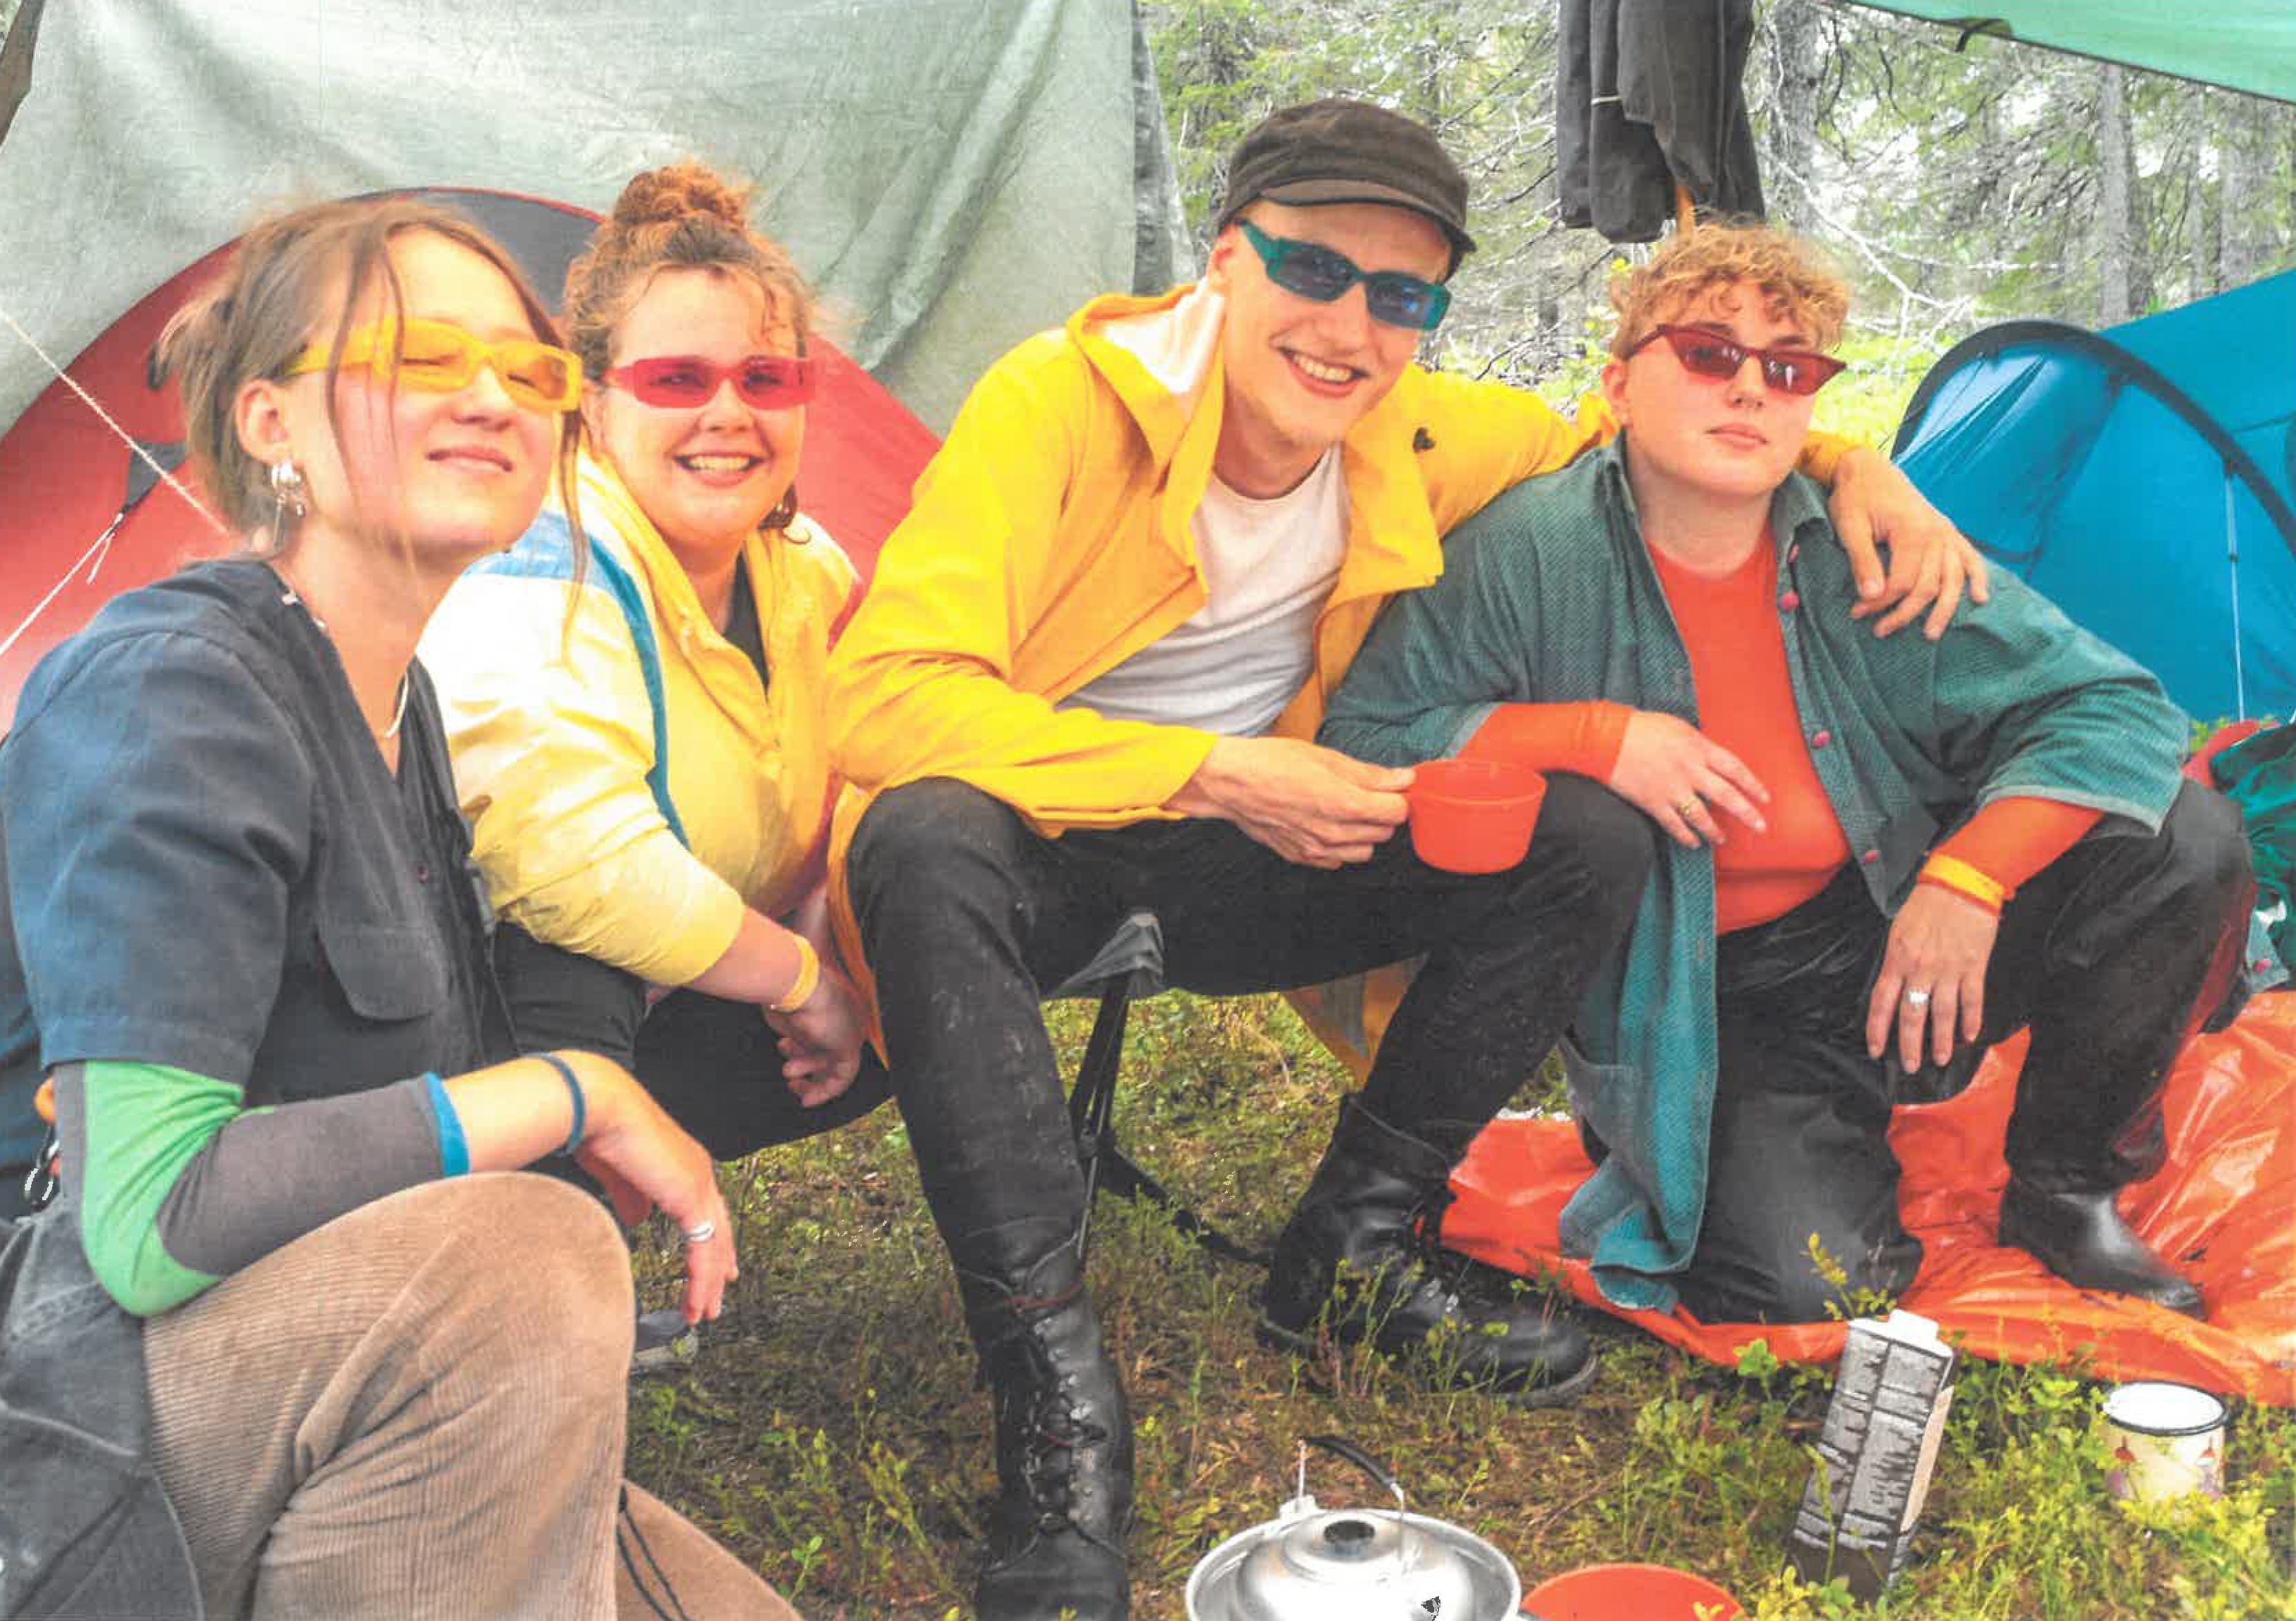 Neljä henkilöä värikkäissä aurinkolaseissa poseeraavat kameralle telttojen edessä.